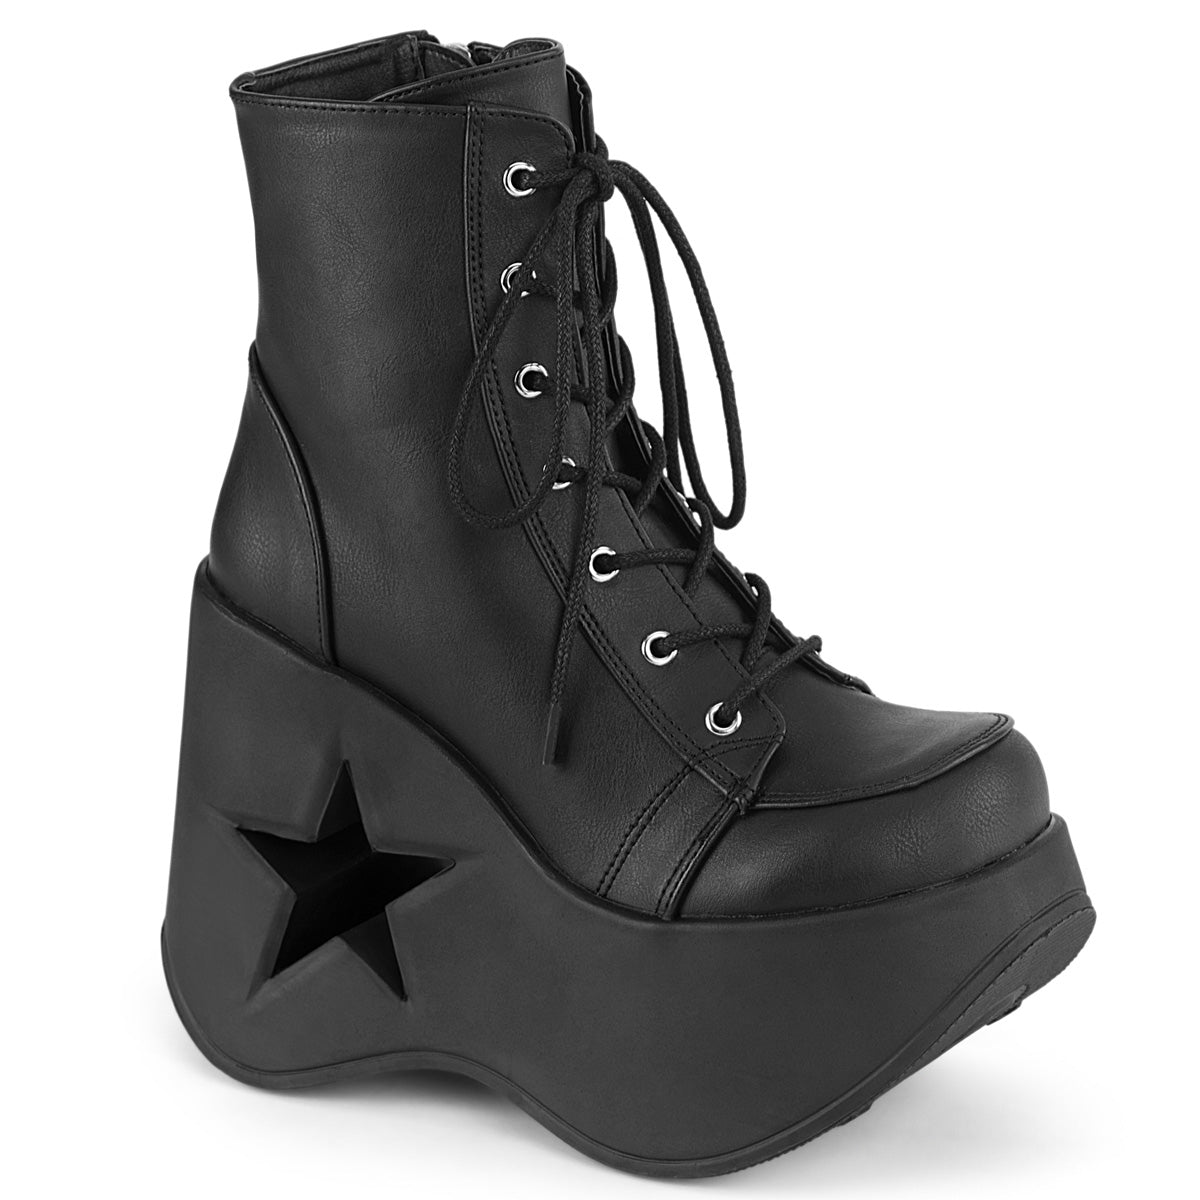 DYNAMITE-106 Alternative Footwear Demonia Women's Ankle Boots Blk Vegan Leather